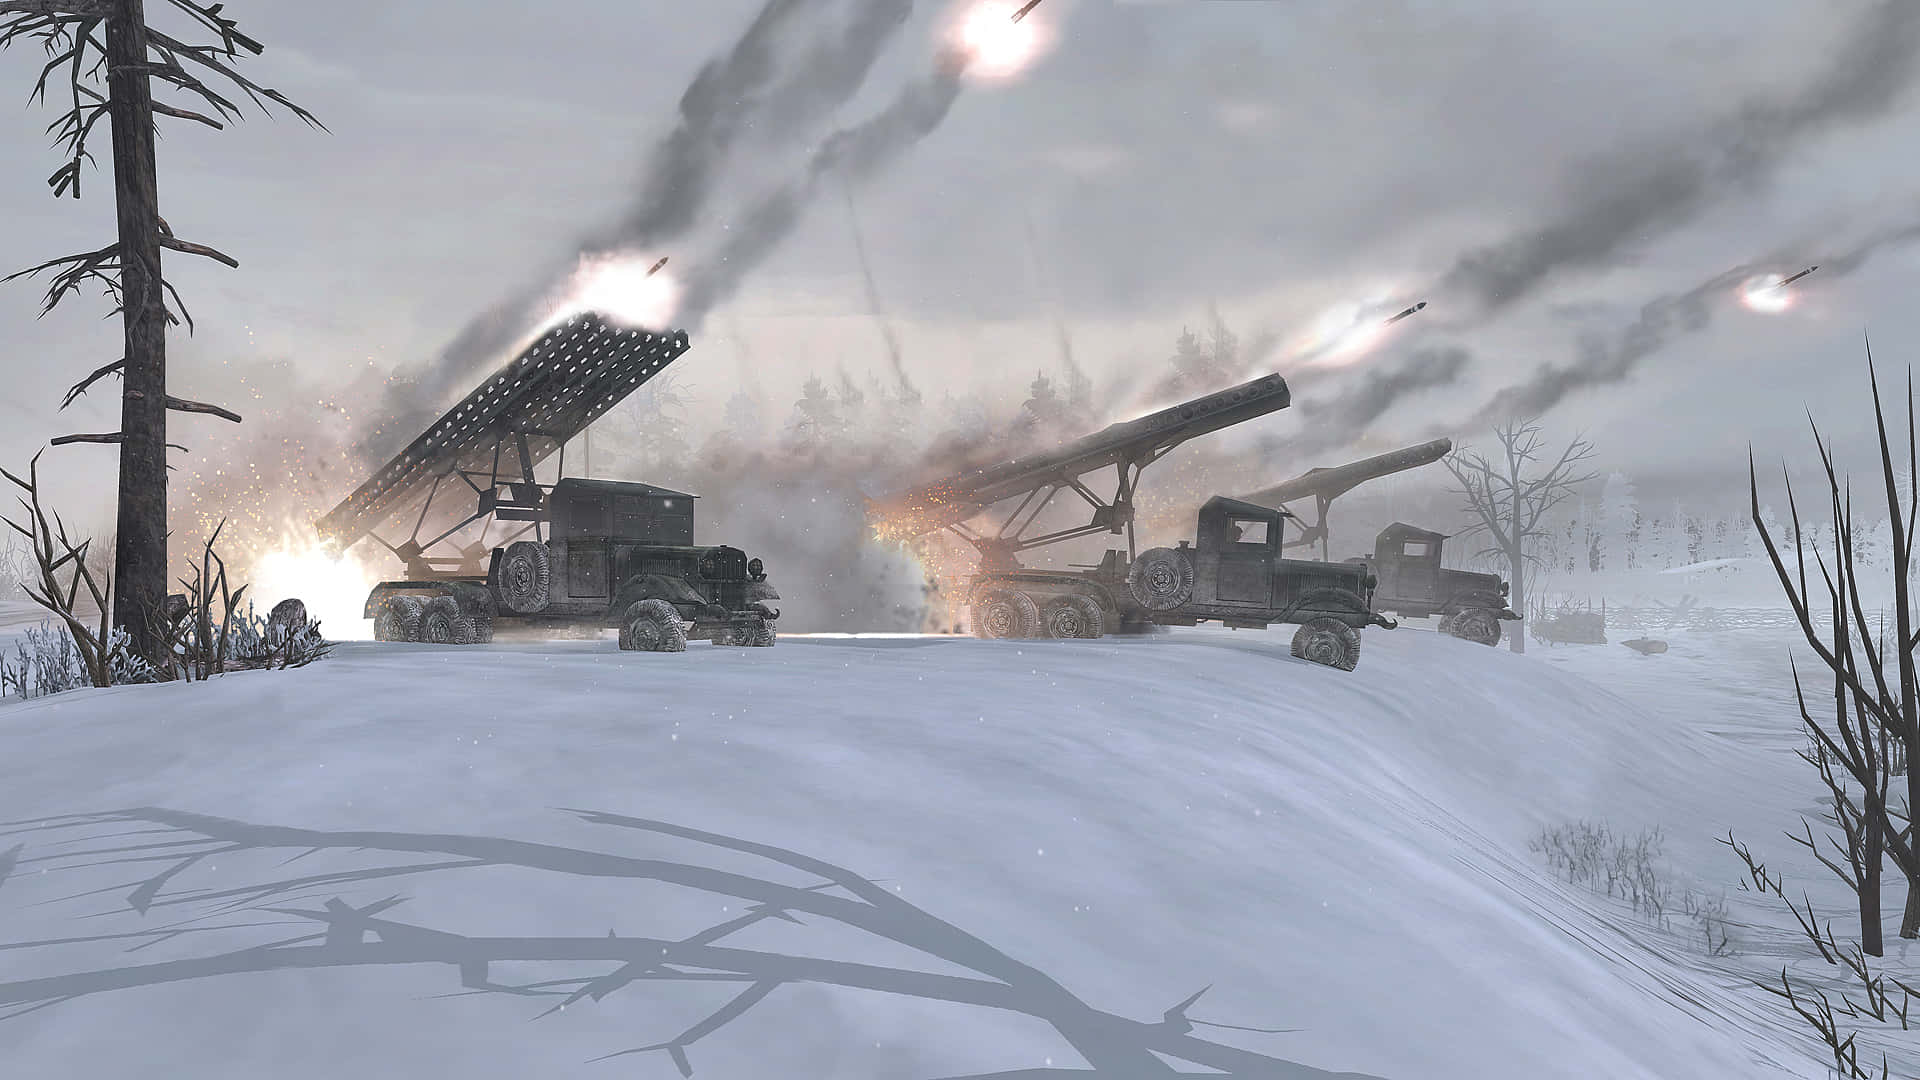 Einvideospiel, Das Eine Verschneite Szene Mit Einem Militärfahrzeug Zeigt.